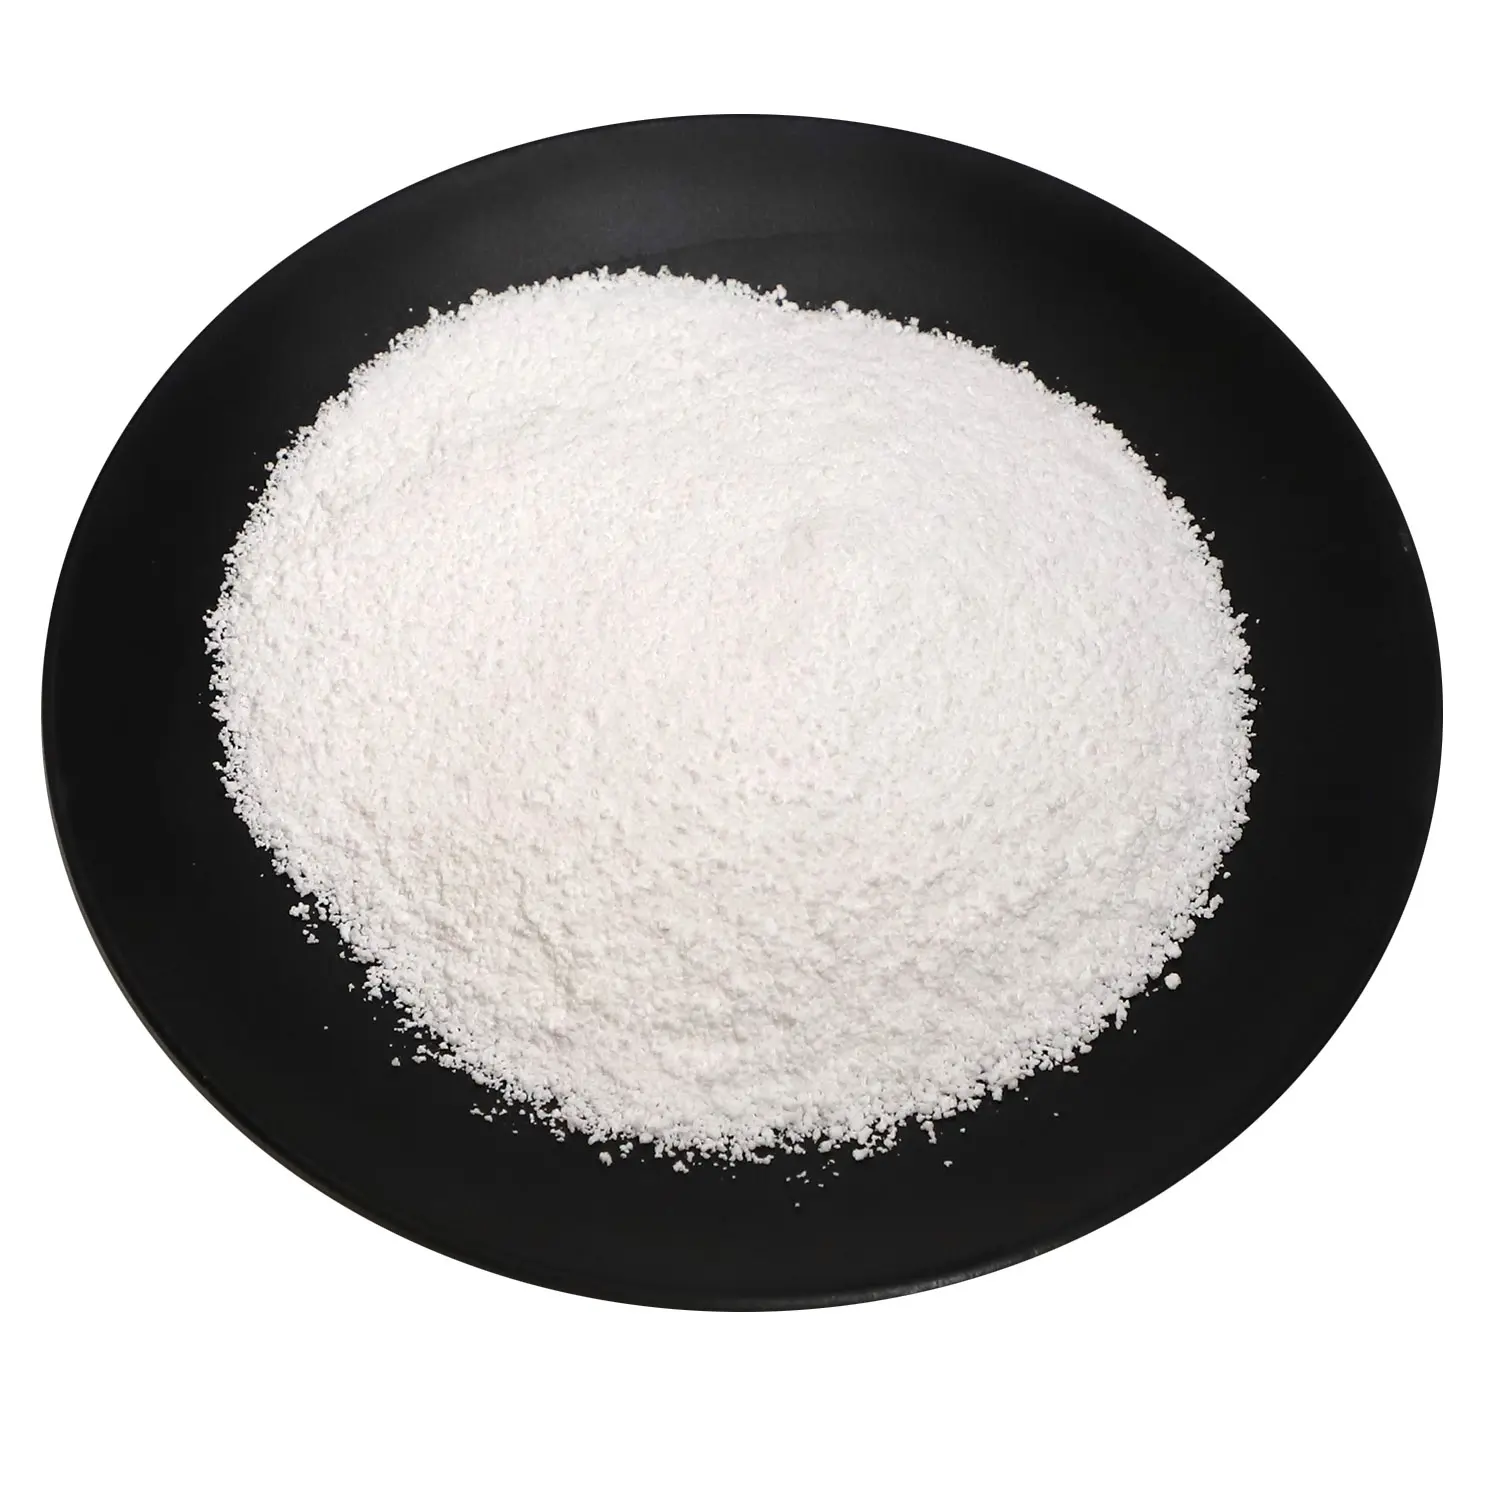 Tripolifosato de sodio 94% grau alimentício, stpp para detergente cerâmica